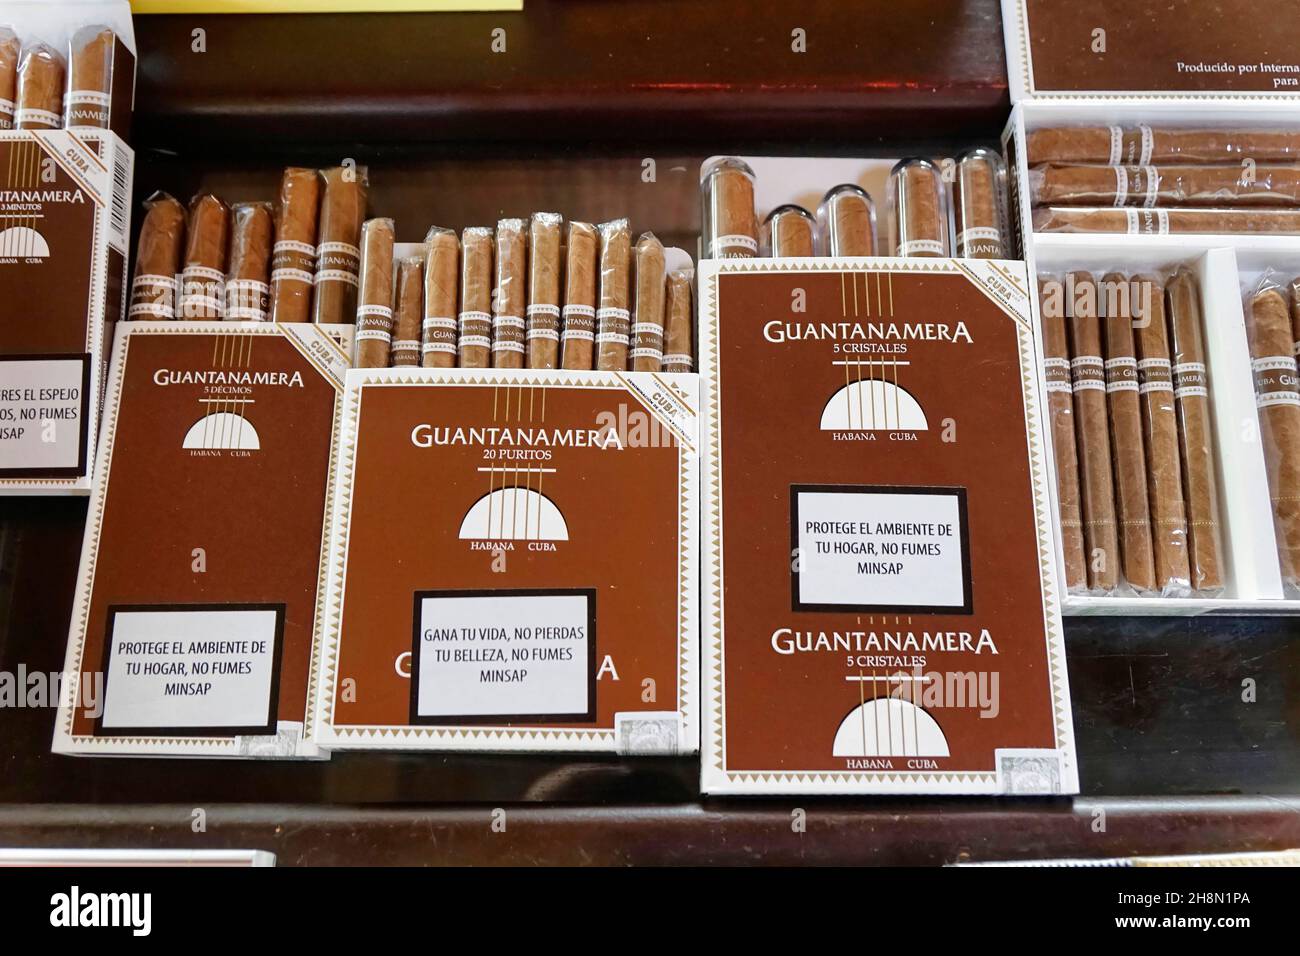 Ventes de havanes, La pandémie n'a pas éteint le cigare cubain